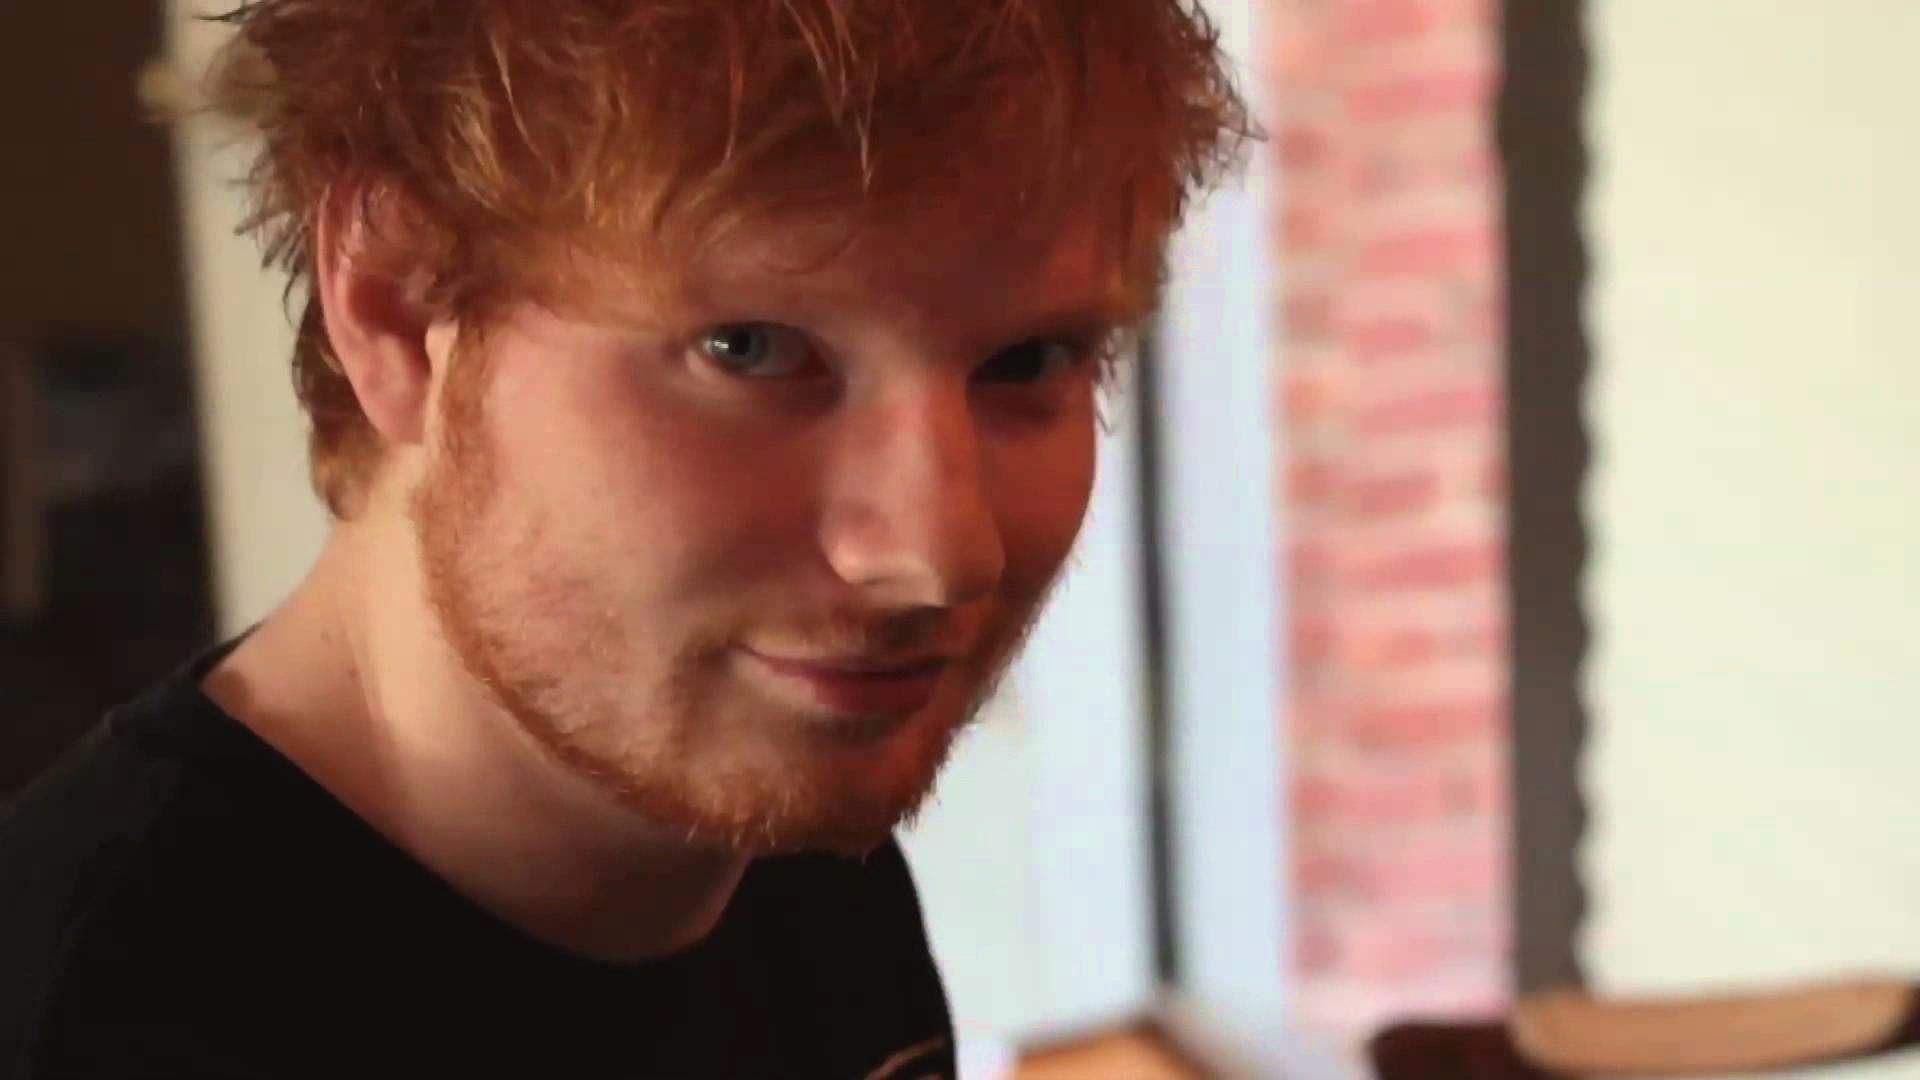 Ed Sheeran Wallpaper HD Download